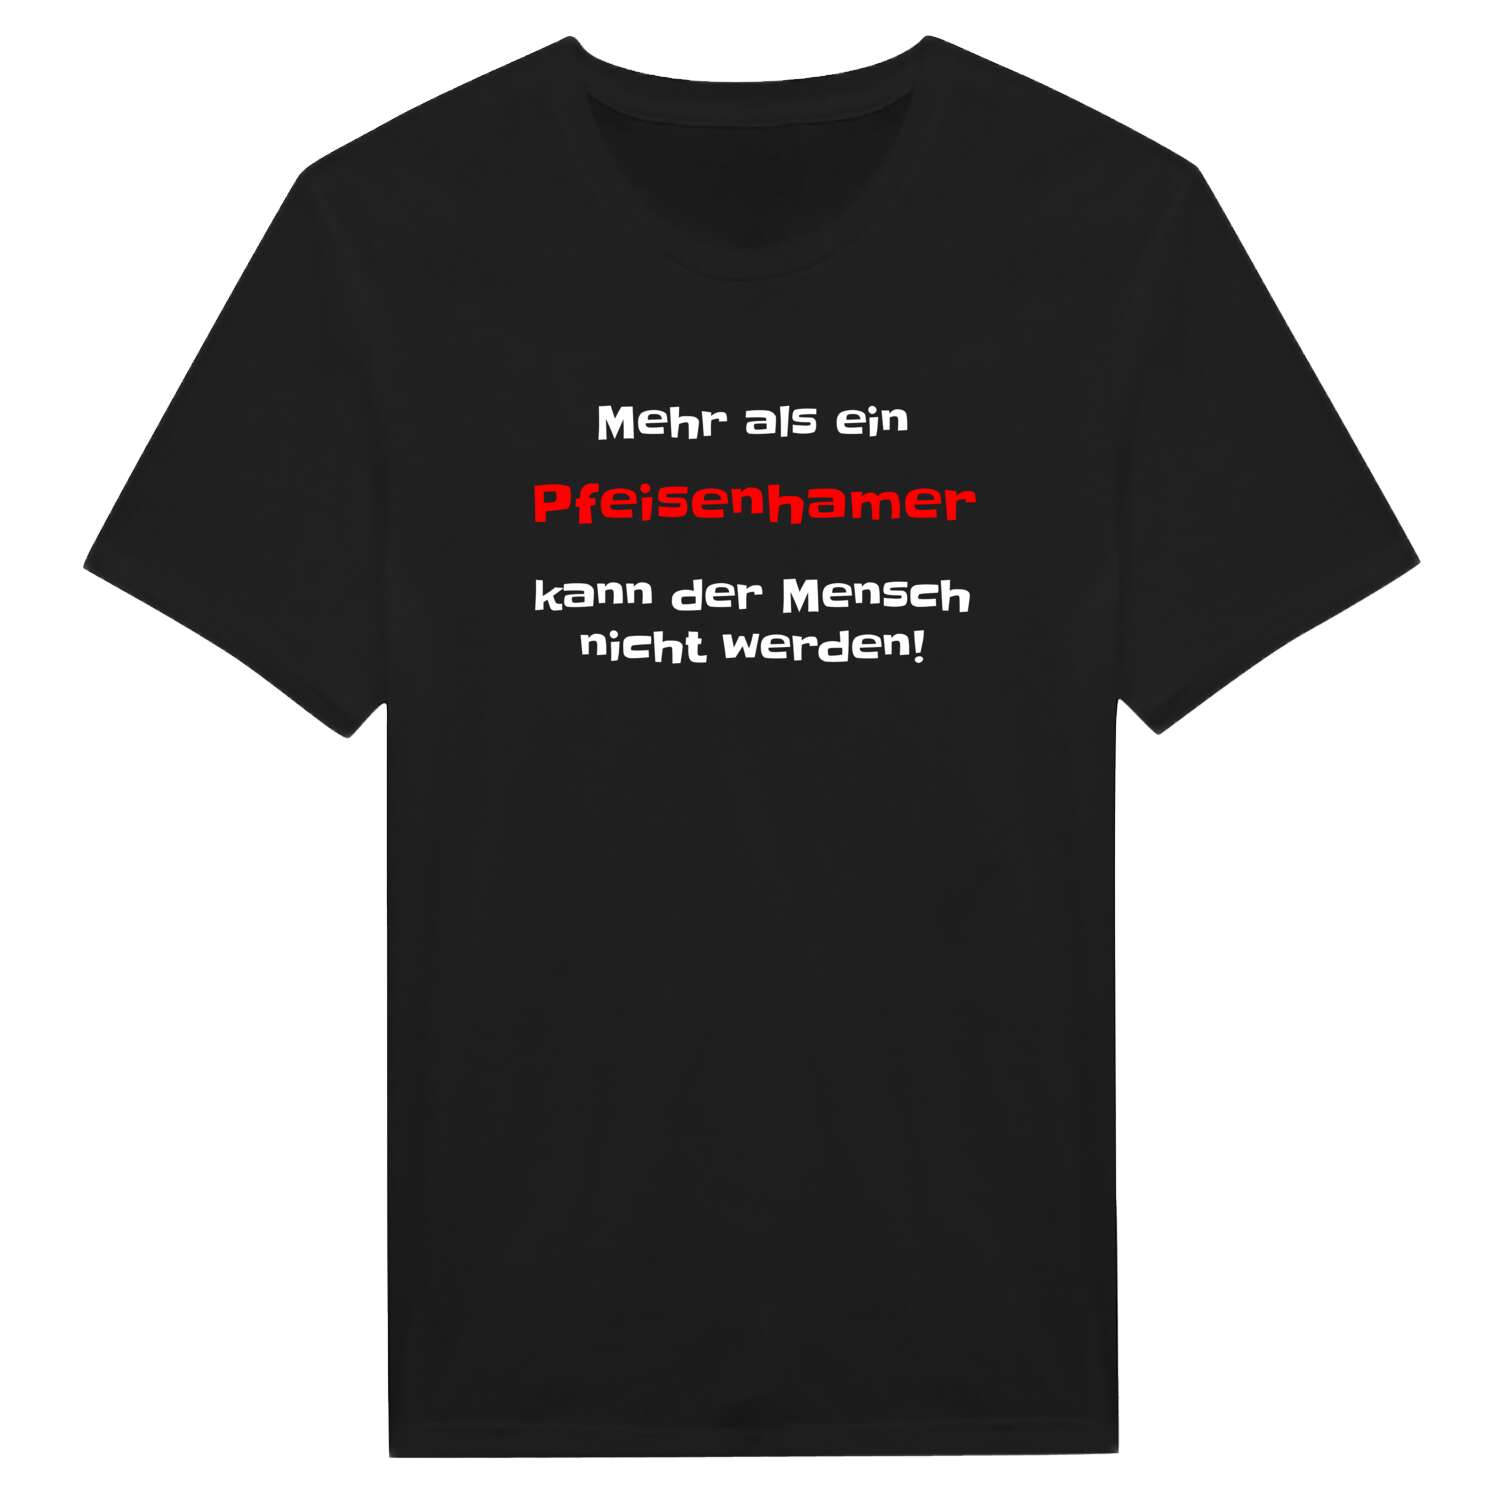 Pfeisenham T-Shirt »Mehr als ein«